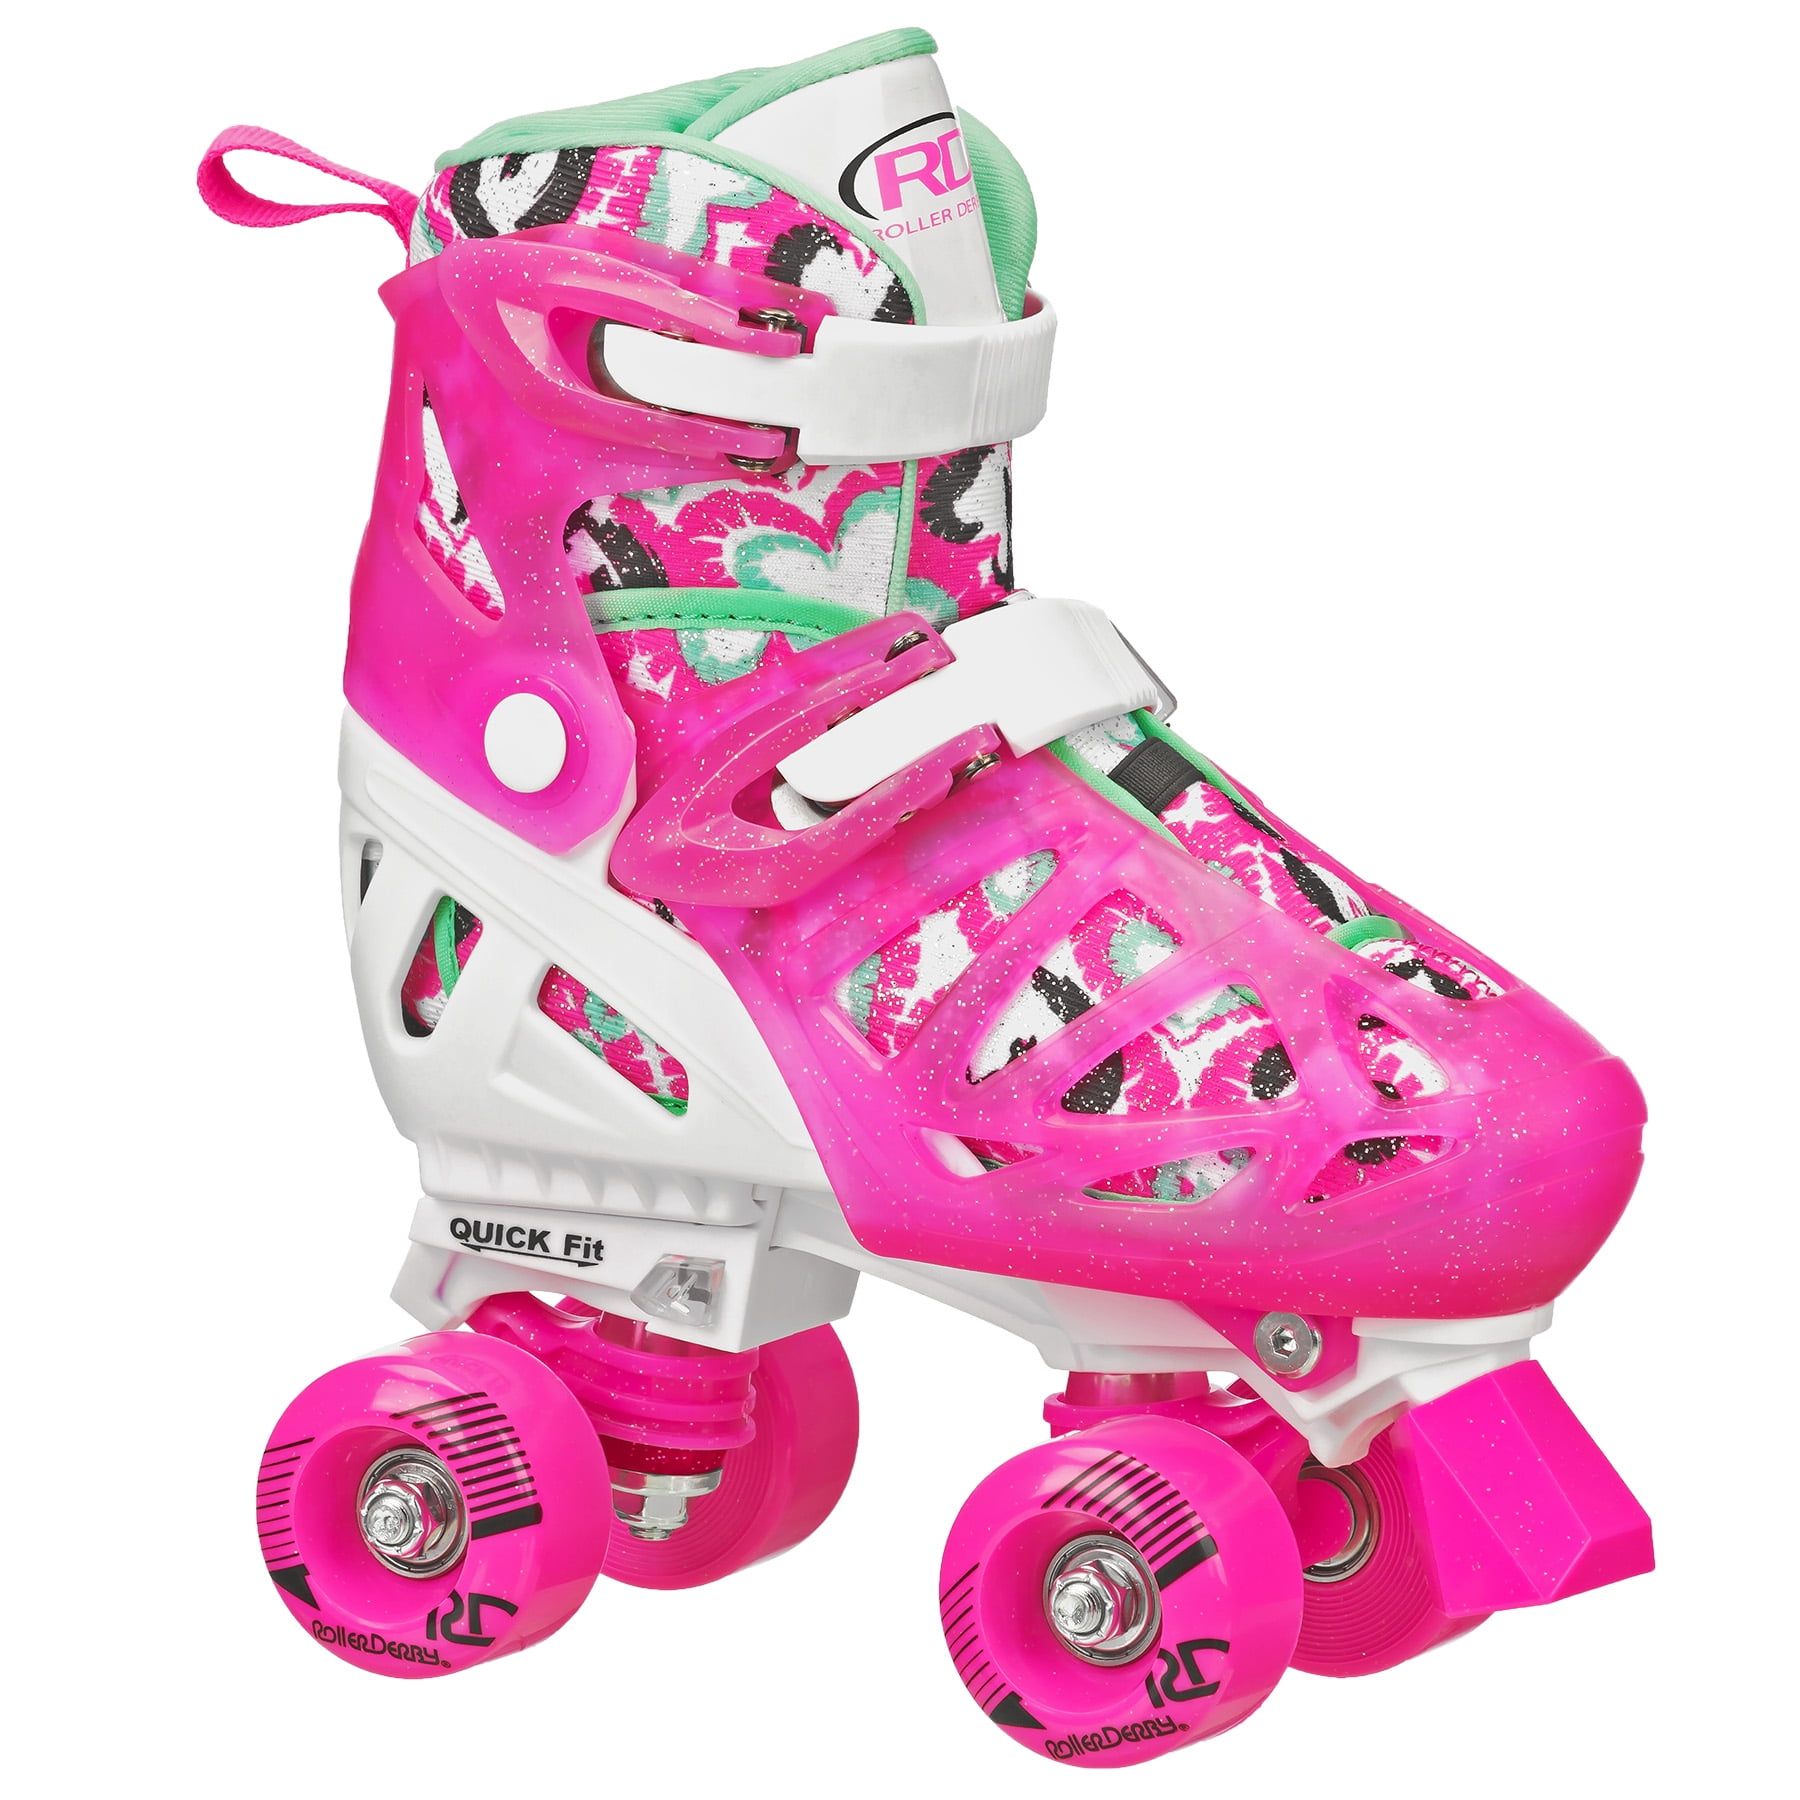 Roller Skates for Girls Boys and Kids 4 Size Adjustable Toddler Roller Skates US 